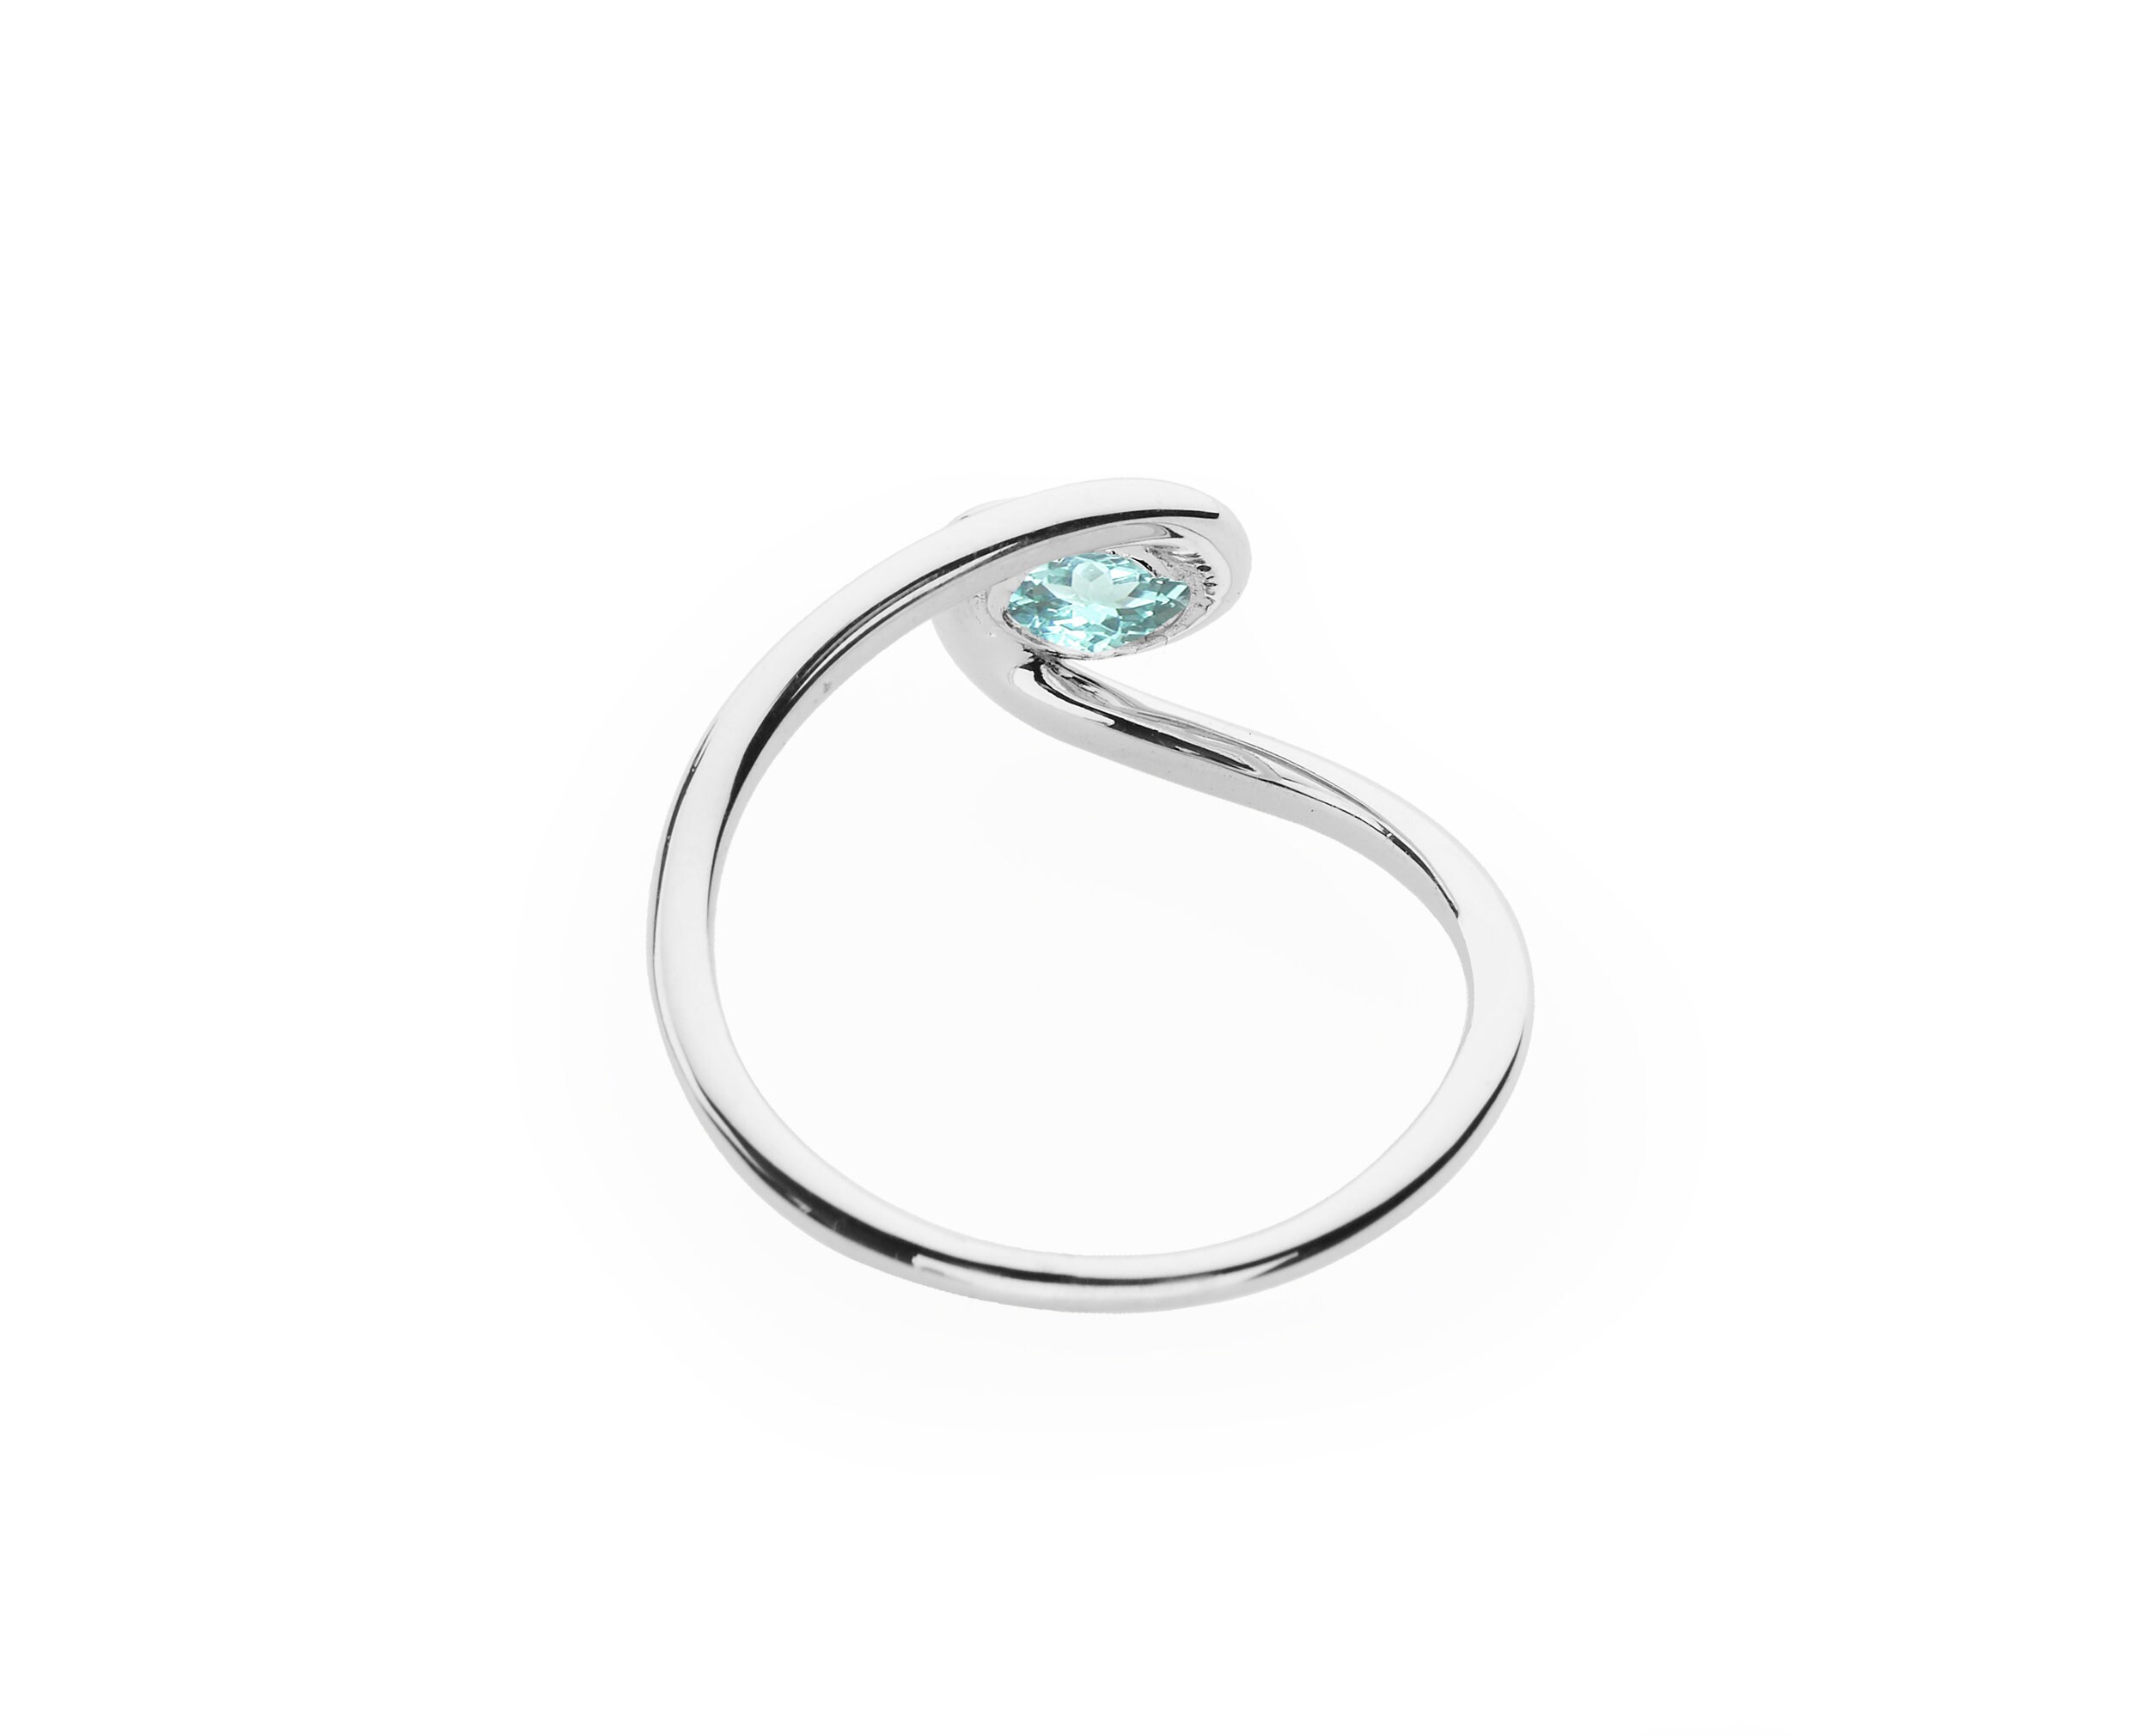 Paraiba tourmaline engagement ring Teal blue gemstone wedding | Etsy